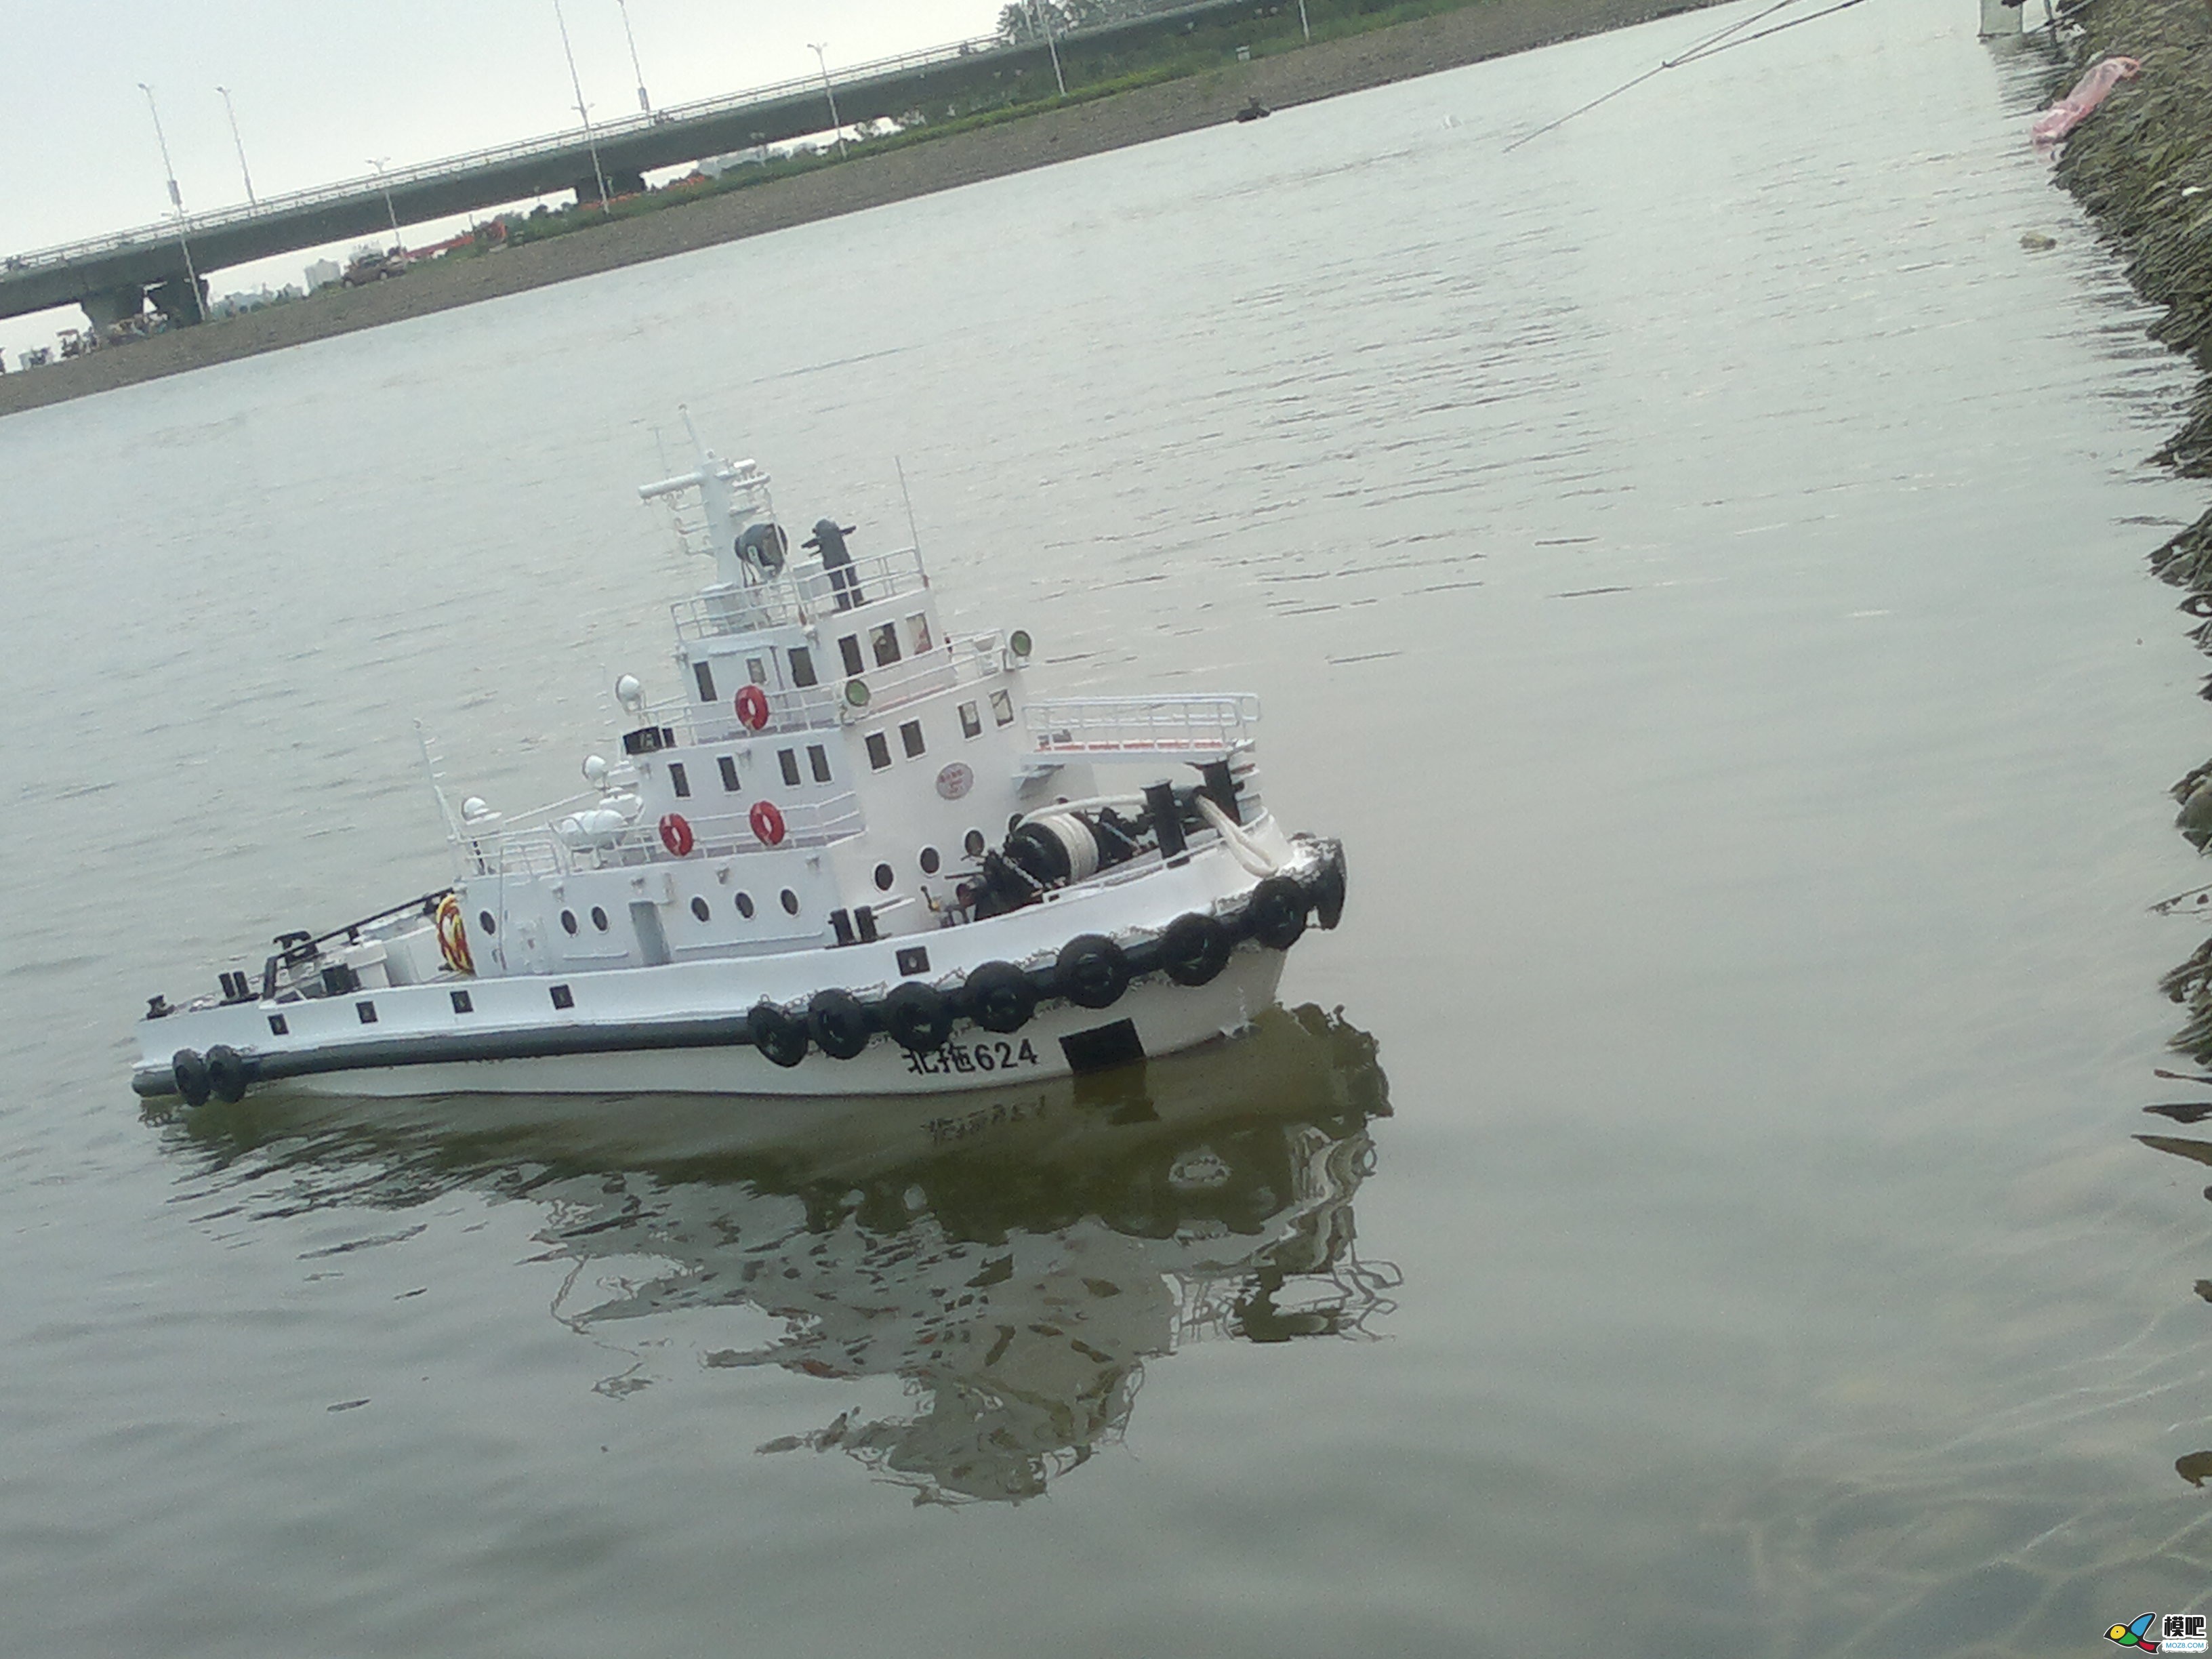 因为怀念所以制作，海军拖船制作小记 海军小型拖船,中国海军拖船,海军布缆船 作者:艇长 8731 